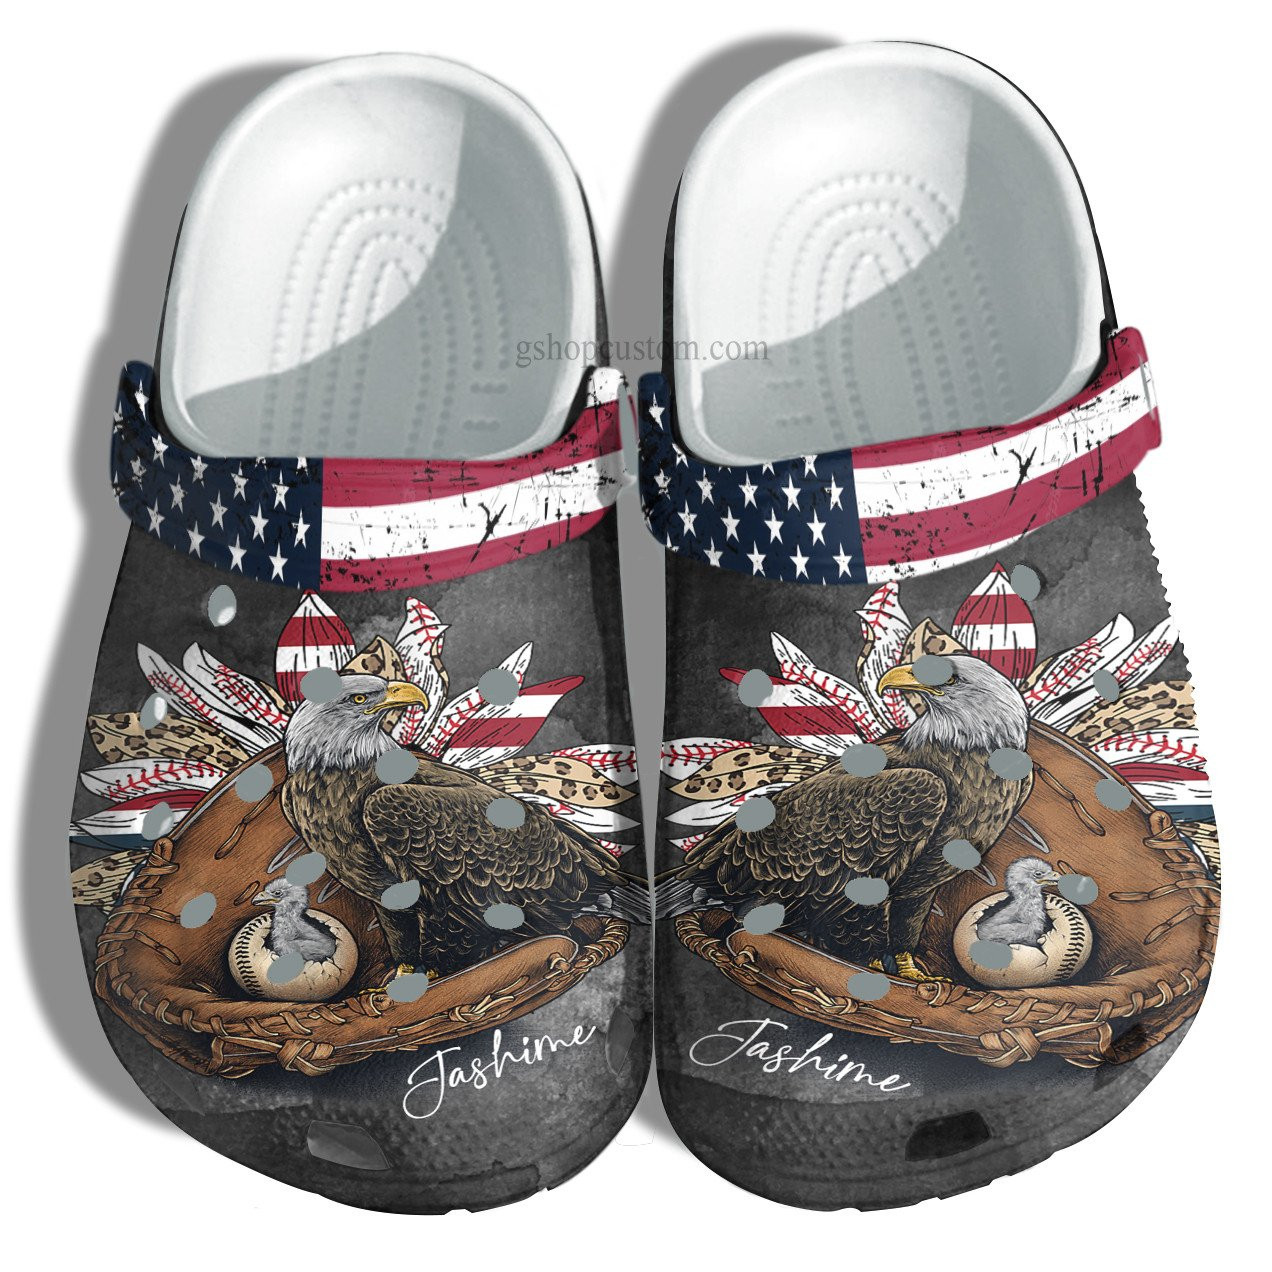 Baseball Eagle Sunflower Leopard Usa Flag Crocs Shoes Gift Mom Grandma - Baseball Eagle America Shoes Croc Clogs